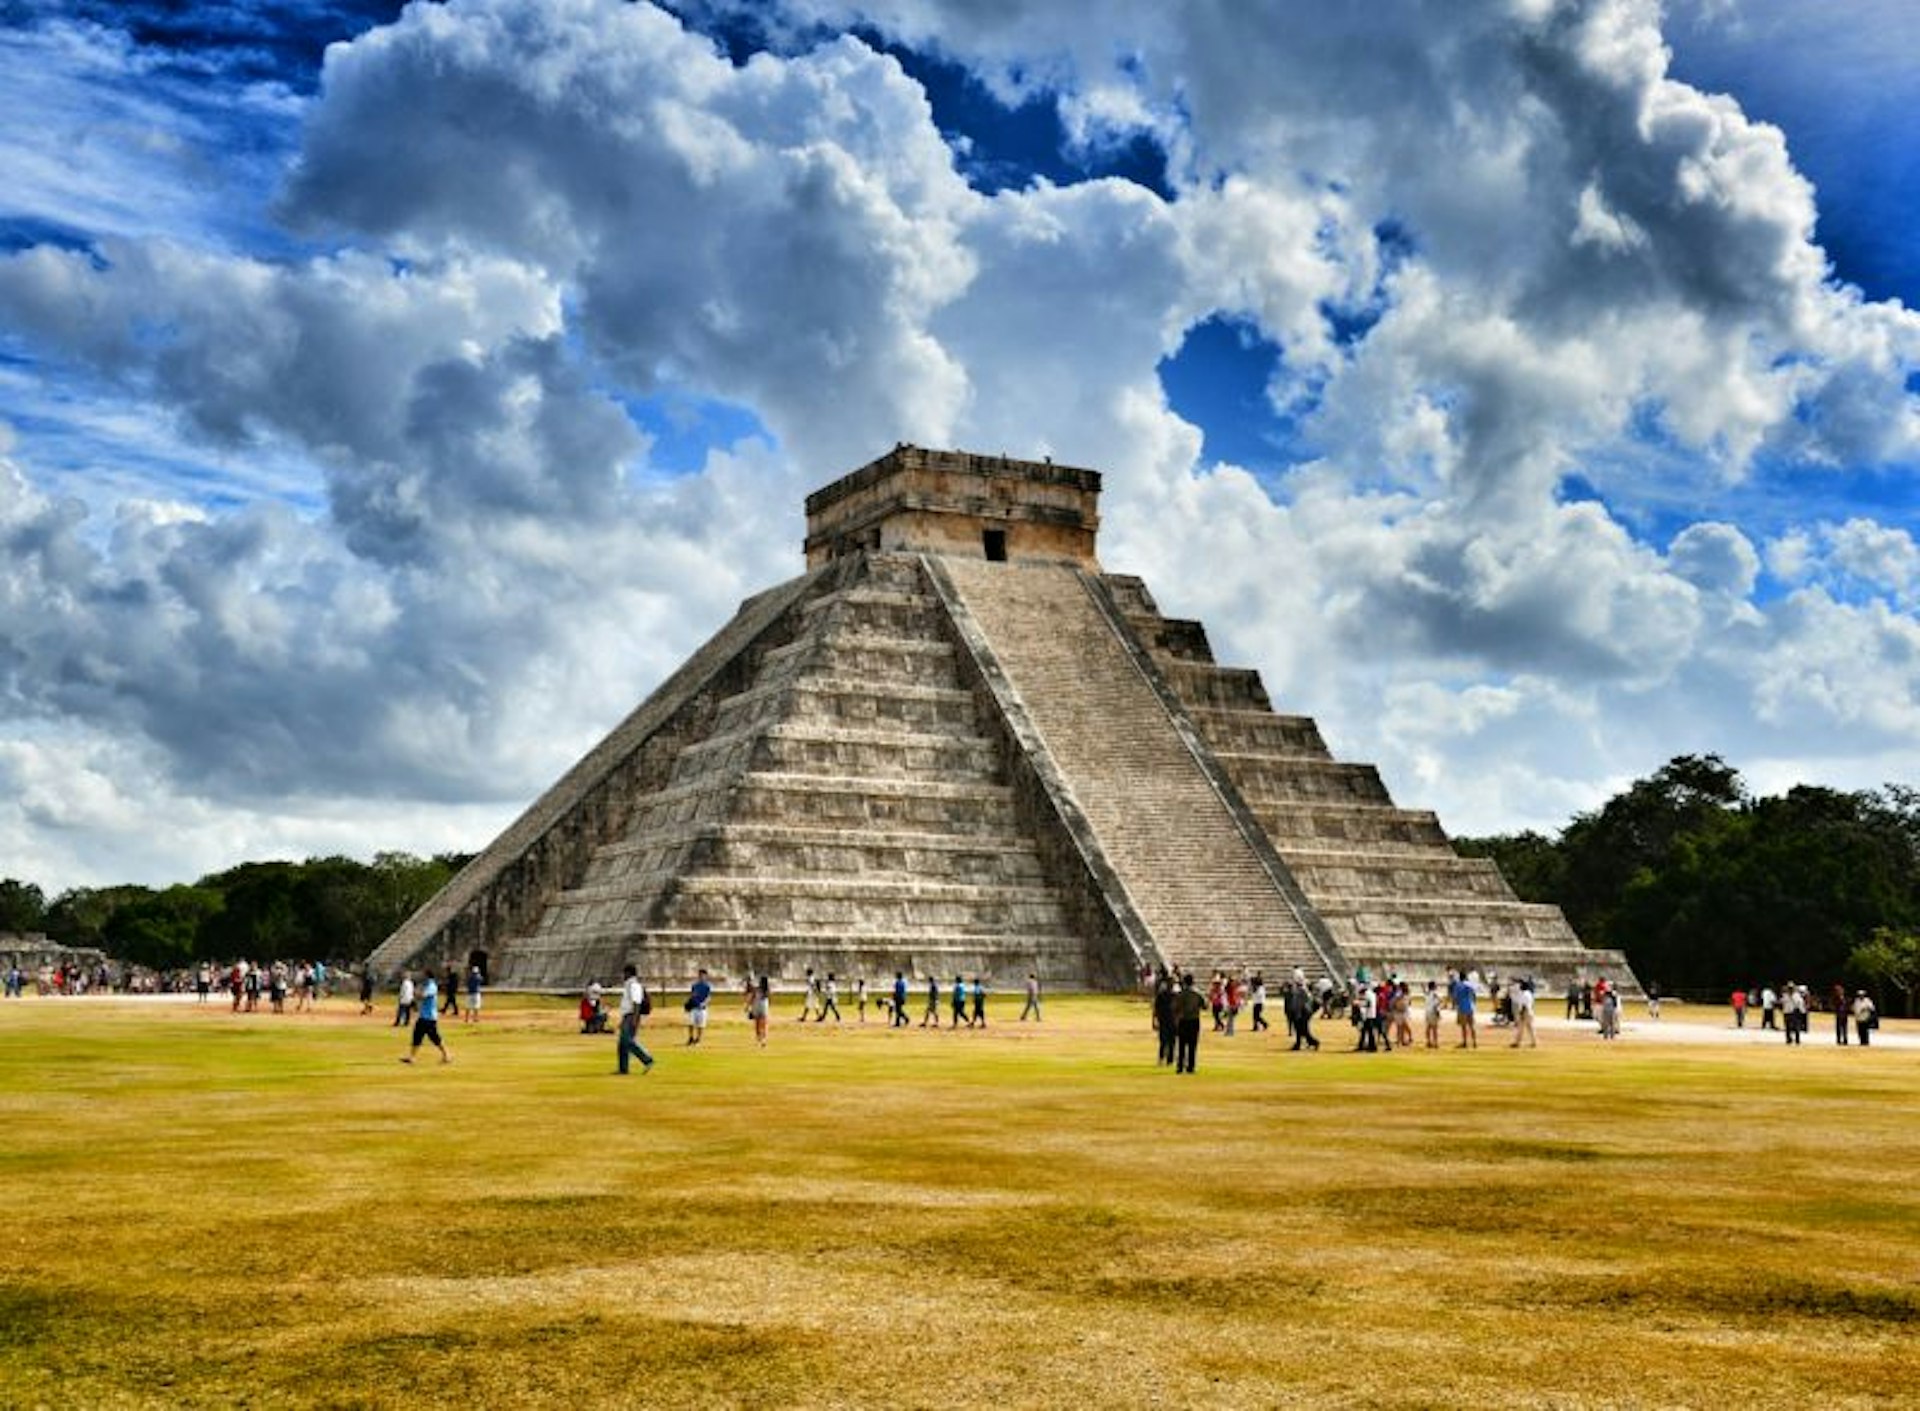 The El Castillo pyramid at Chichen Itza in Mexico